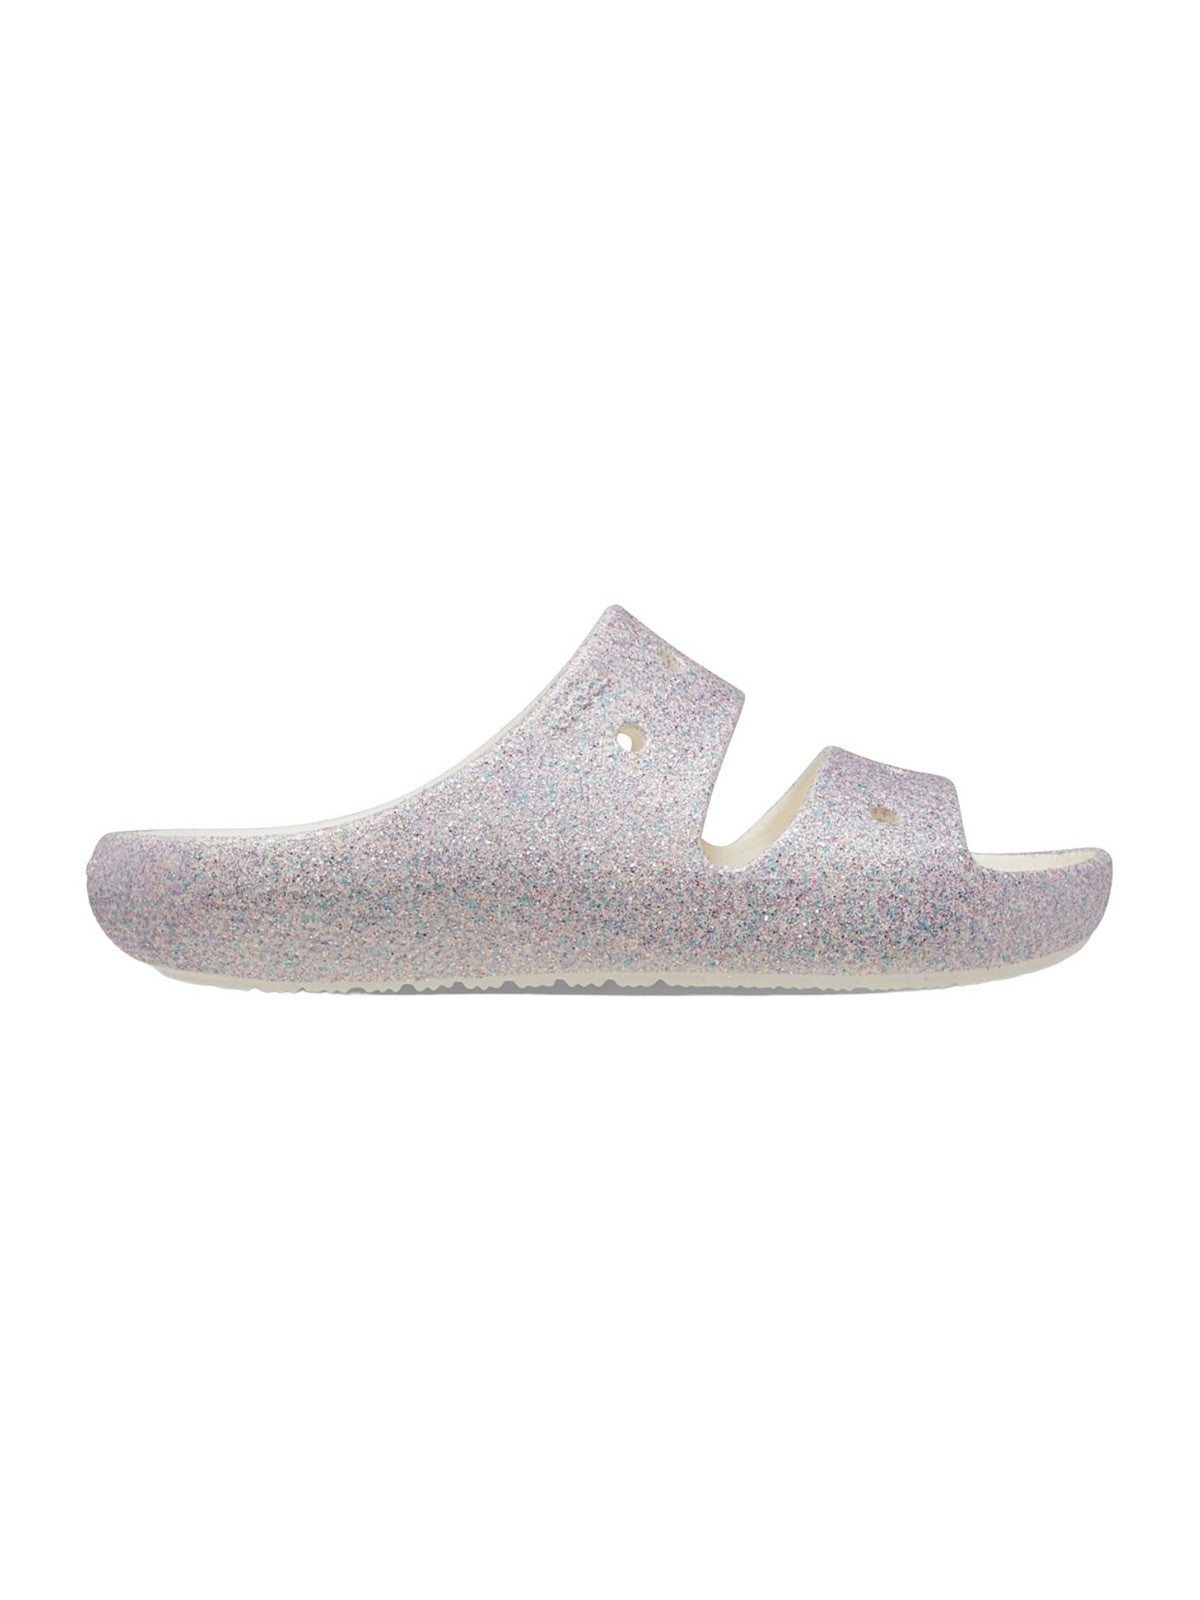 CROCS Enfants et Filles Classic Glitter Sandal 2 K 209705 9DI Gris